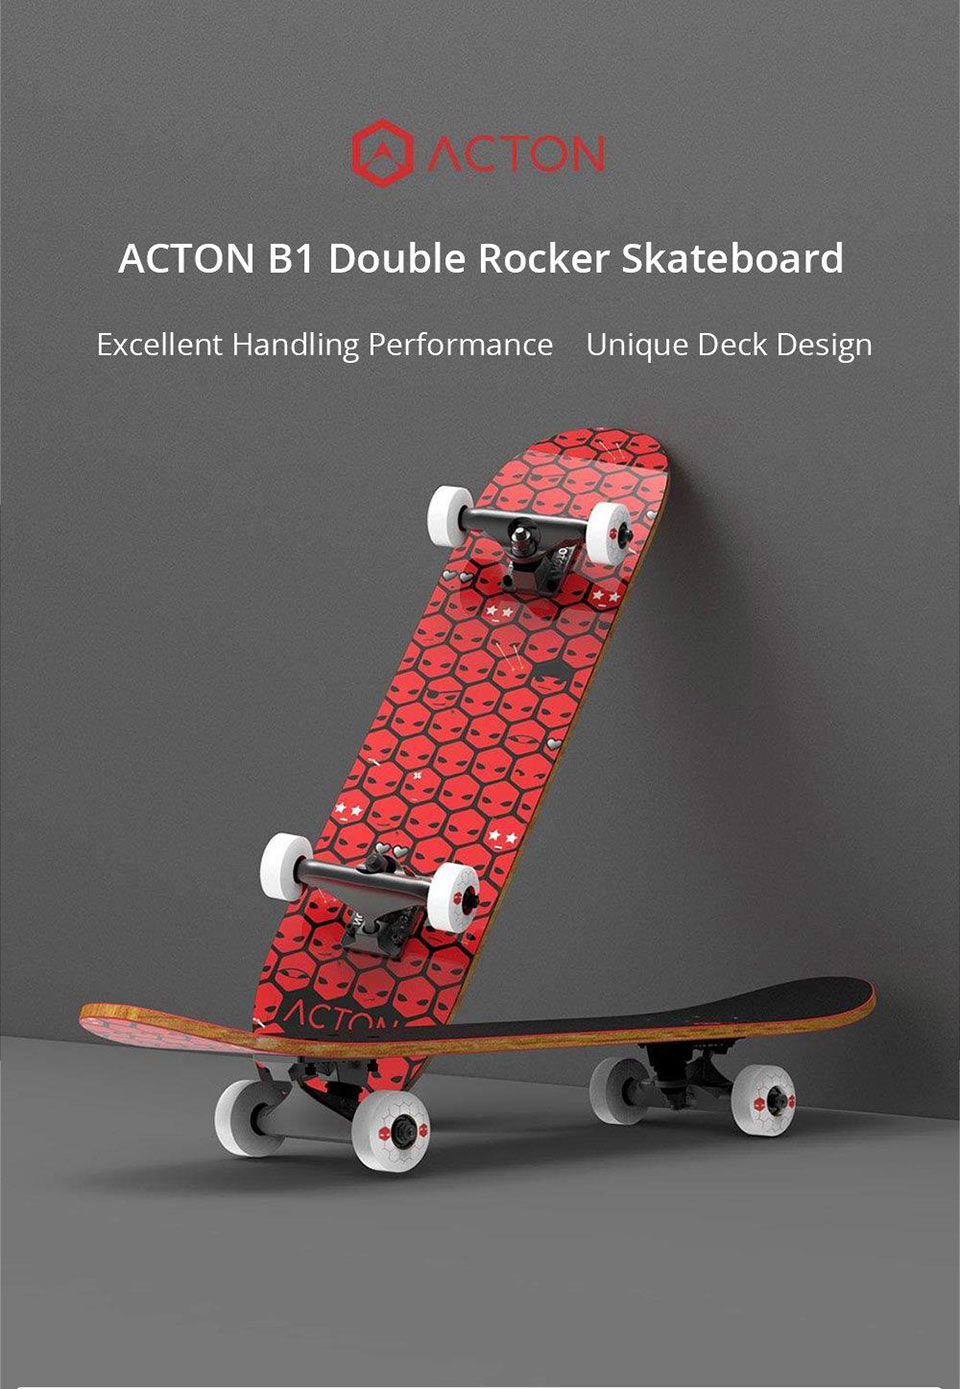 Acton B1 Double Rocker класний скейтборд